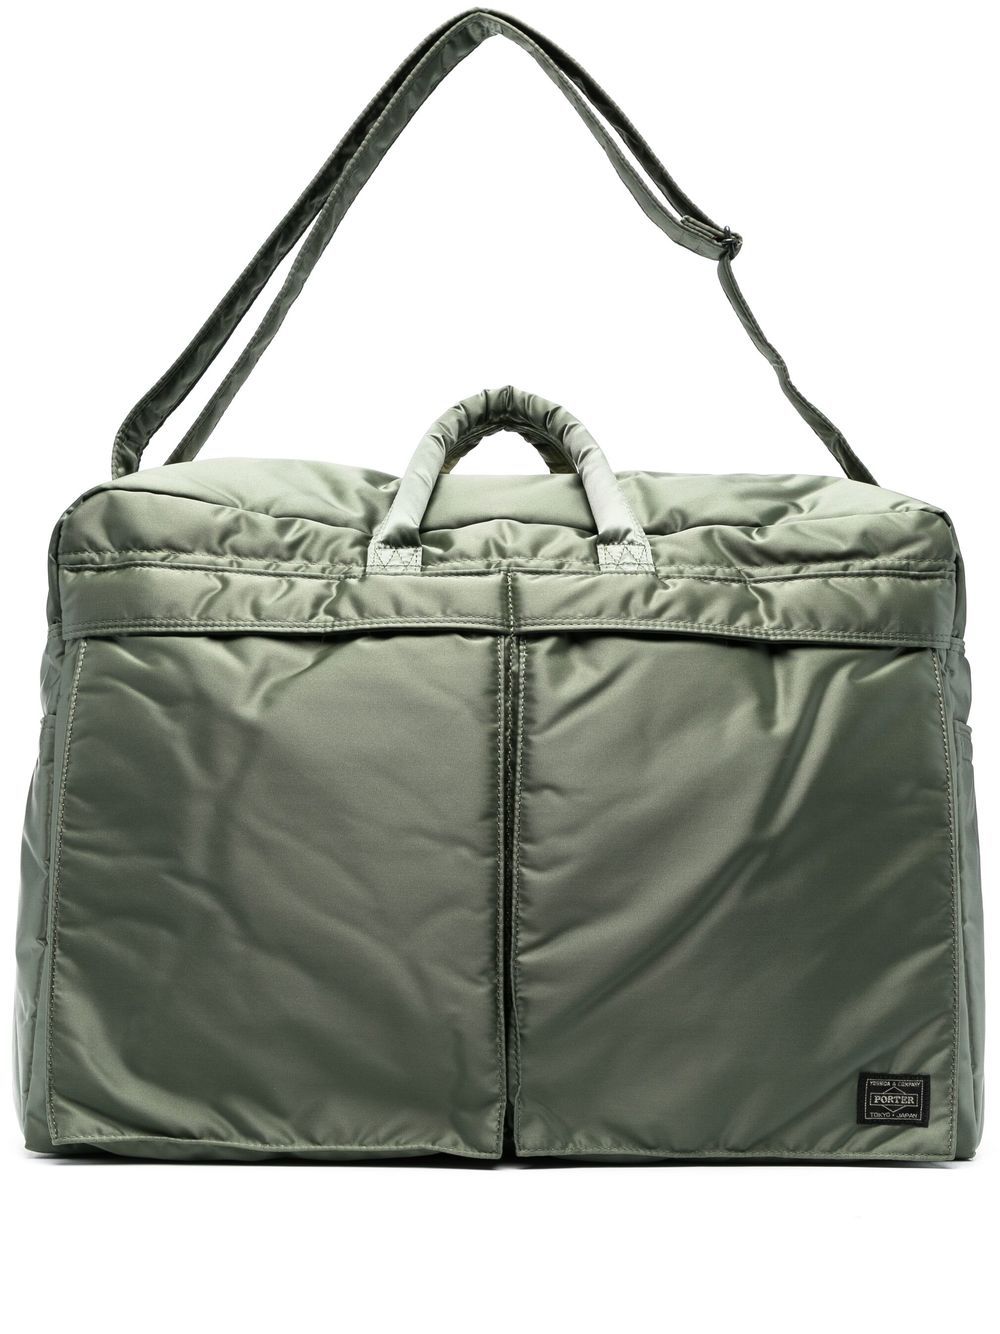 Porter-yoshida & Co Zip-up Duffle Bag In Green